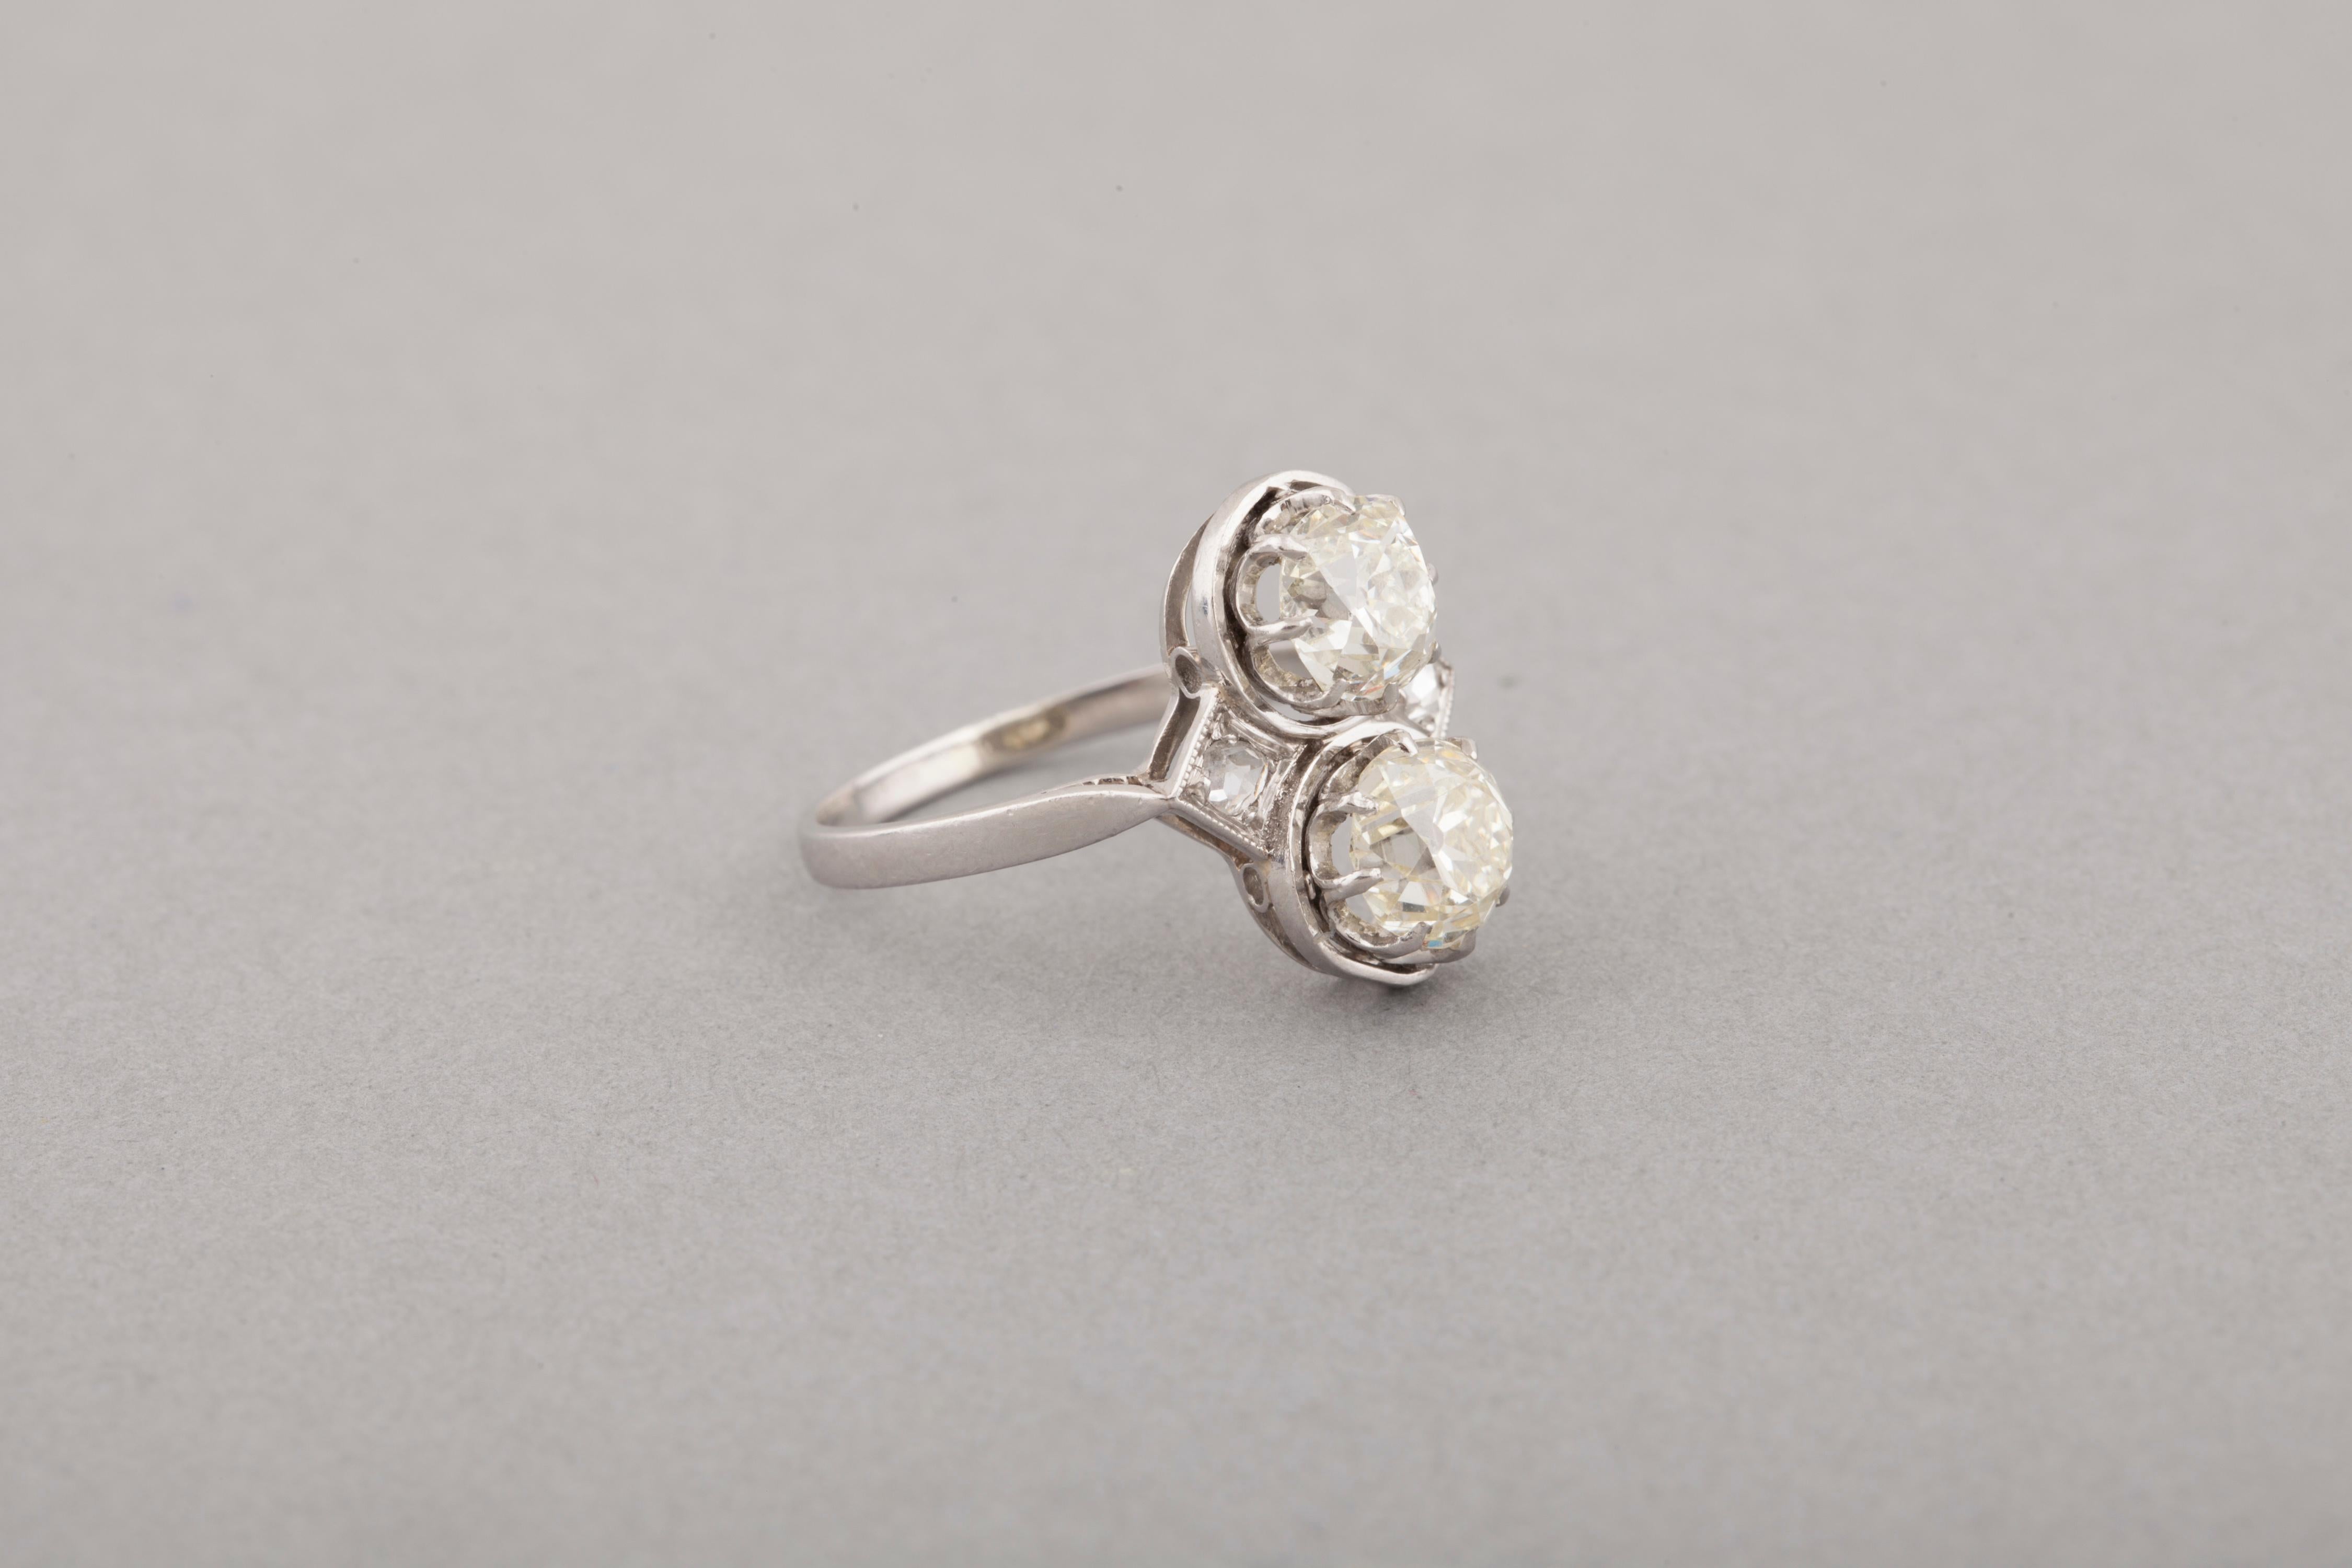 French Toi et Moi Diamonds Antique Ring 2